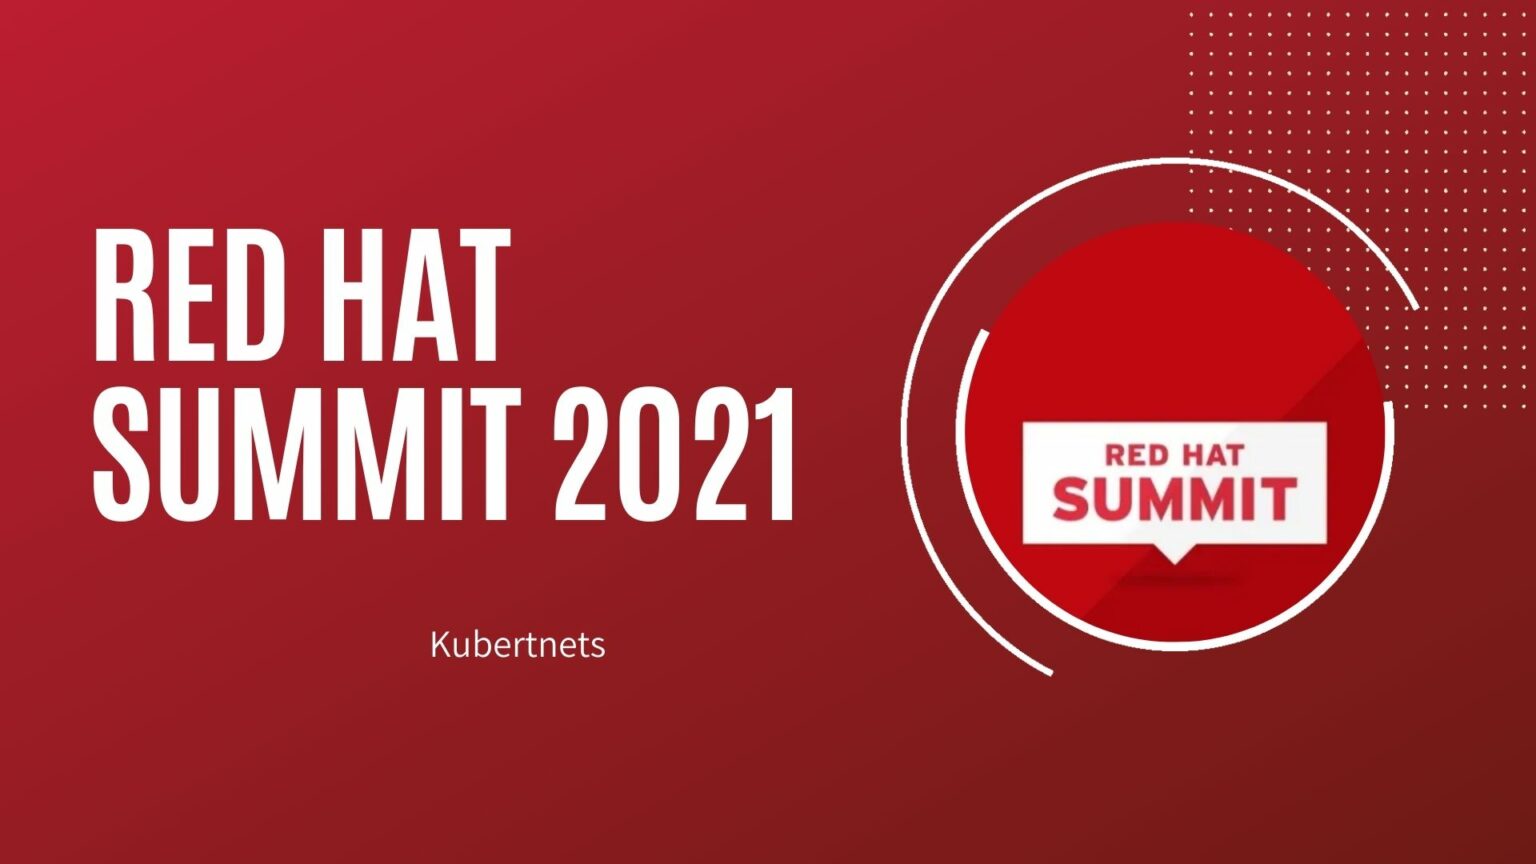 Red Hat Summit 2021 ¿Por qué es la respuesta? shco.tech